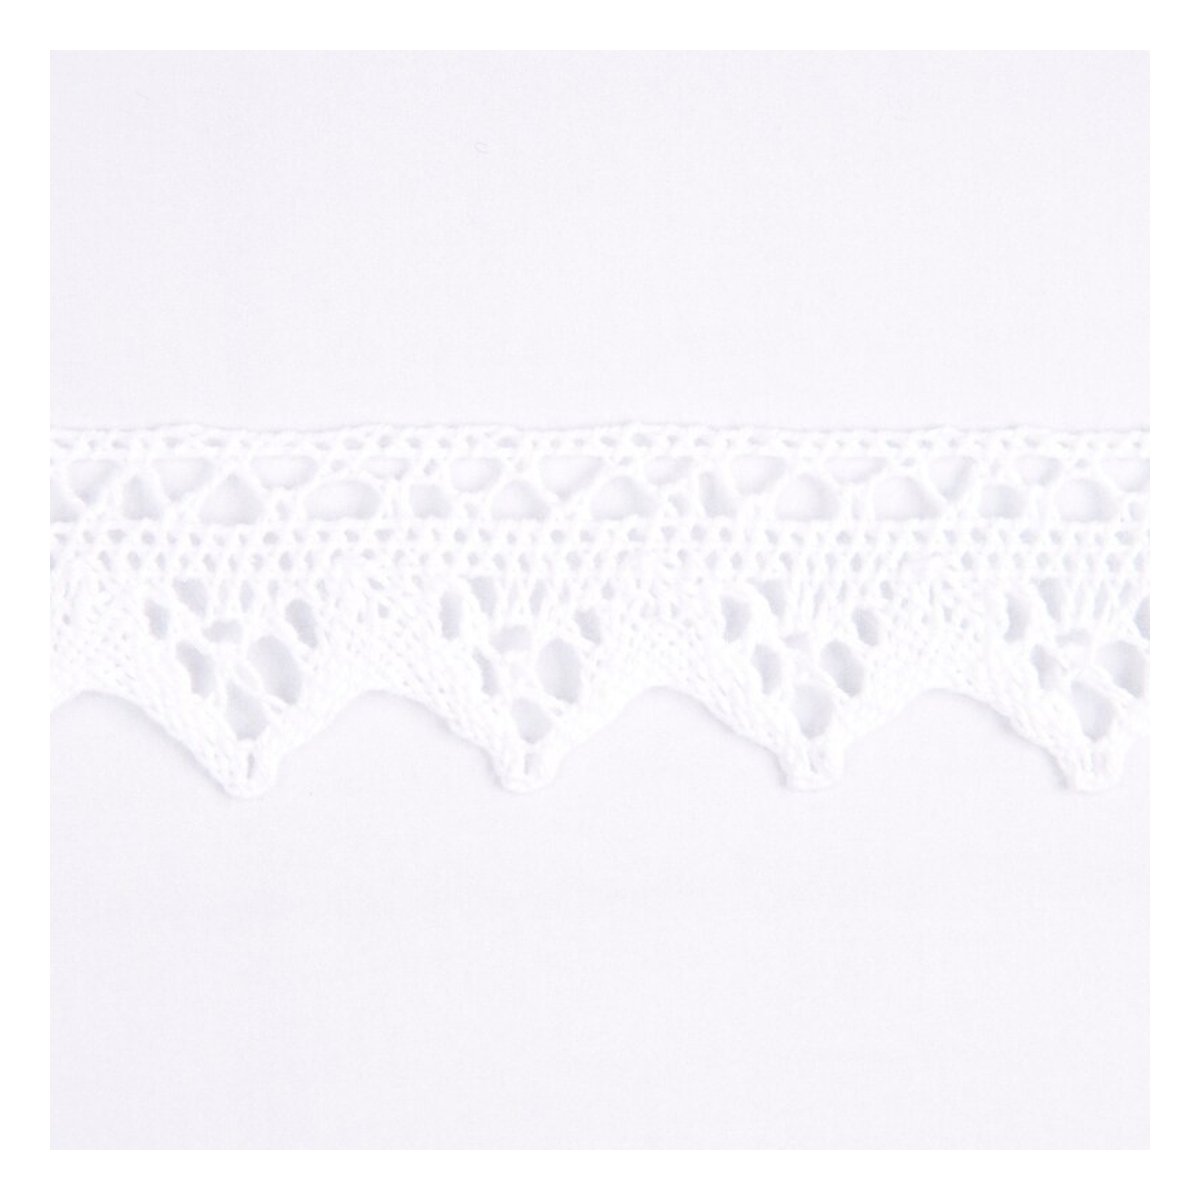 Buy Nylon Lace Trim White Online  Cotton Lace Trim Craft Ideas